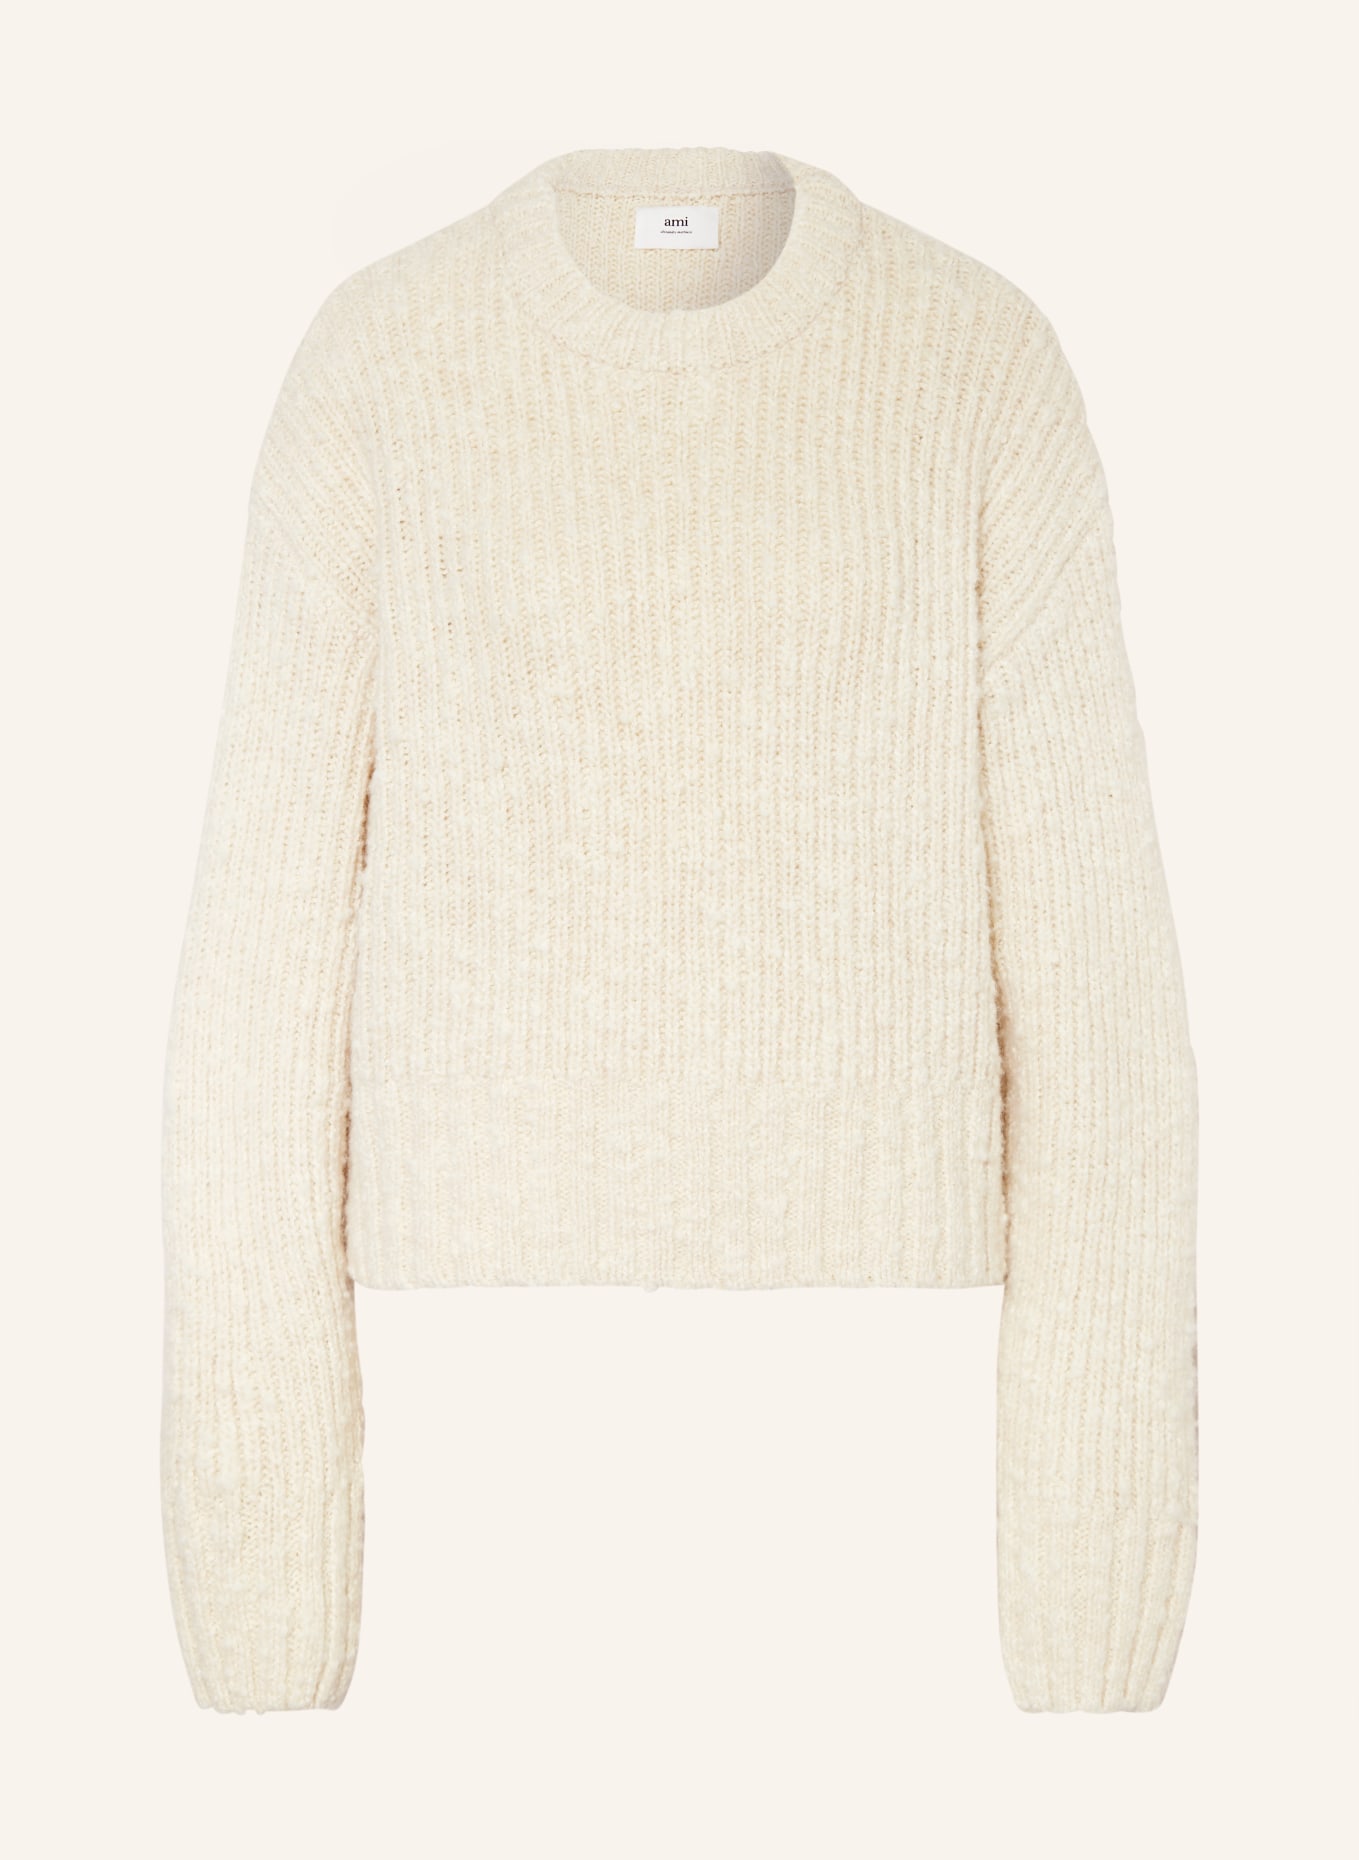 AMI PARIS Sweater, Color: CREAM (Image 1)